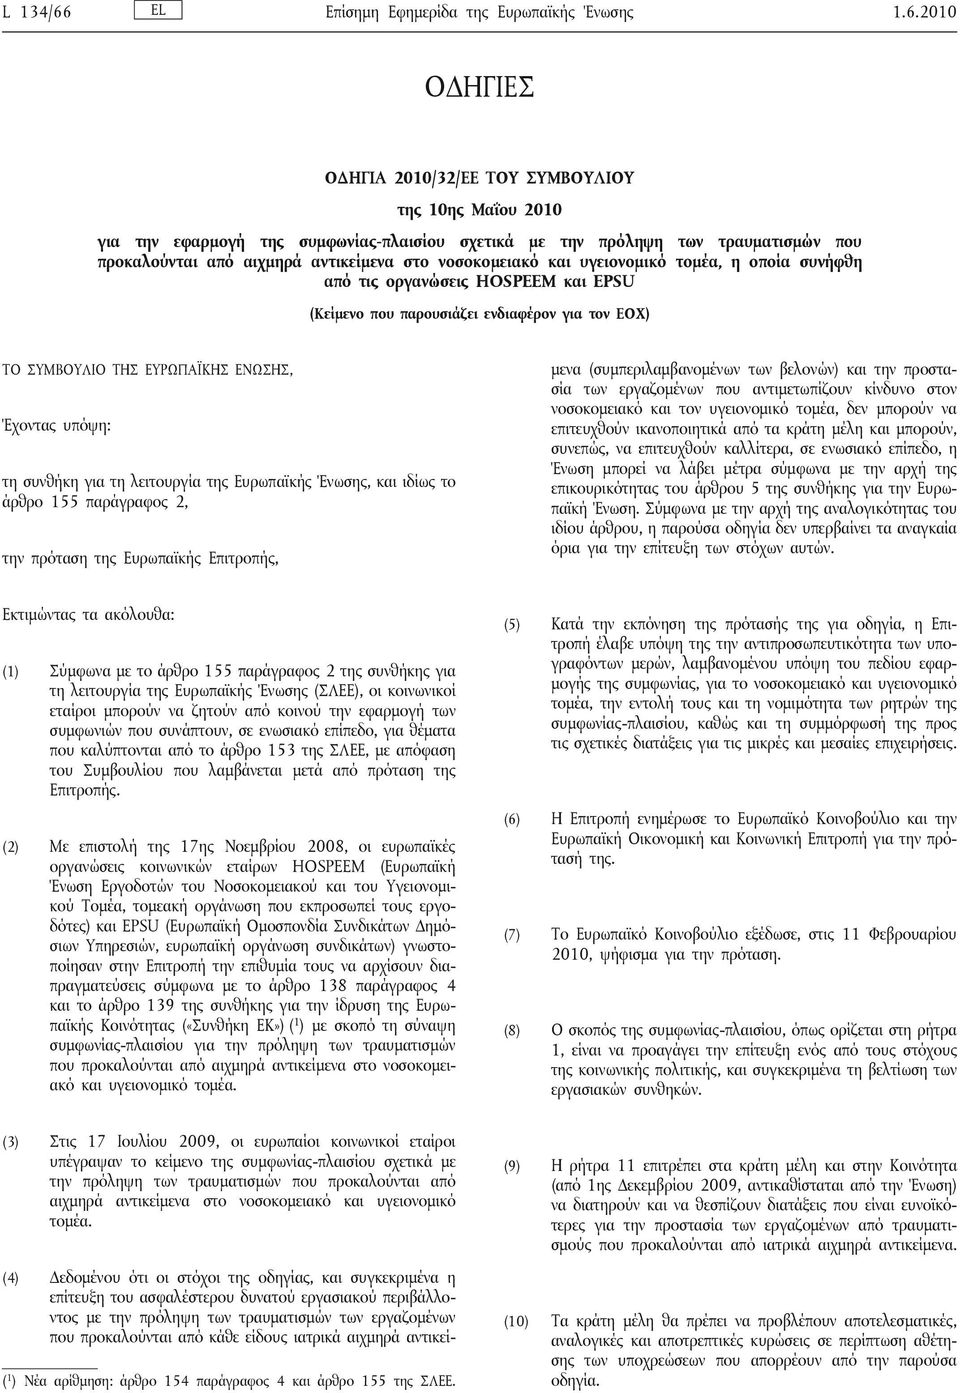 2010 ΟΔΗΓΙΕΣ ΟΔΗΓΙΑ 2010/32/ΕΕ ΤΟΥ ΣΥΜΒΟΥΛΙΟΥ της 10ης Μαΐου 2010 για την εφαρμογή της συμφωνίας-πλαισίου σχετικά με την πρόληψη των τραυματισμών που προκαλούνται από αιχμηρά αντικείμενα στο